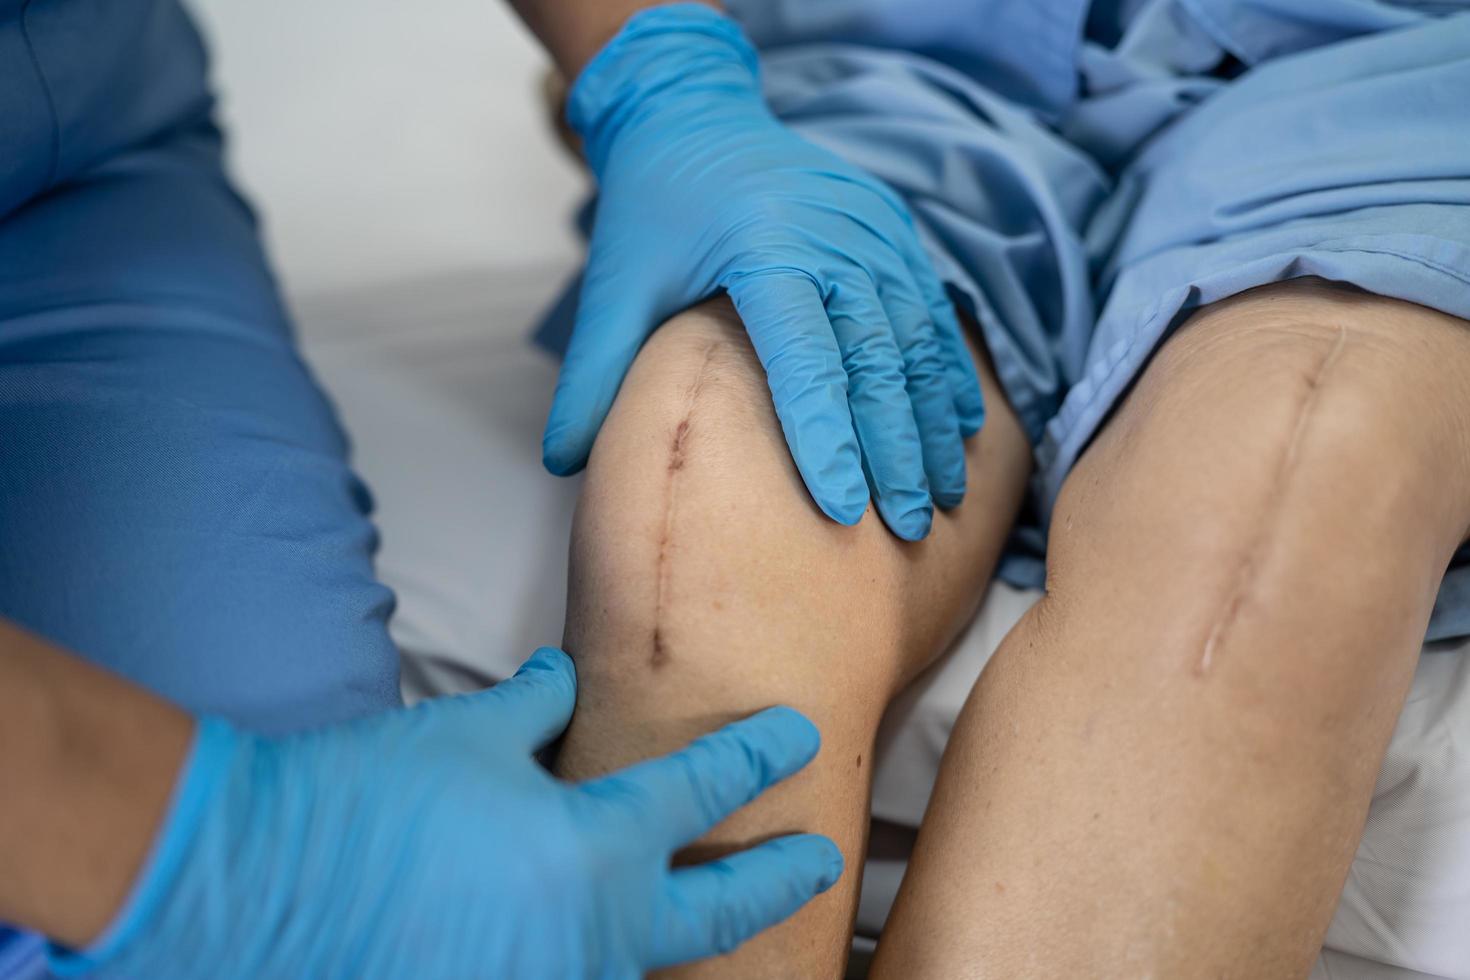 Asiatique senior ou âgée vieille dame femme patiente montrer ses cicatrices chirurgicale remplacement de l'articulation du genou total suture chirurgie des plaies arthroplastie sur lit en salle d'hôpital de soins infirmiers photo